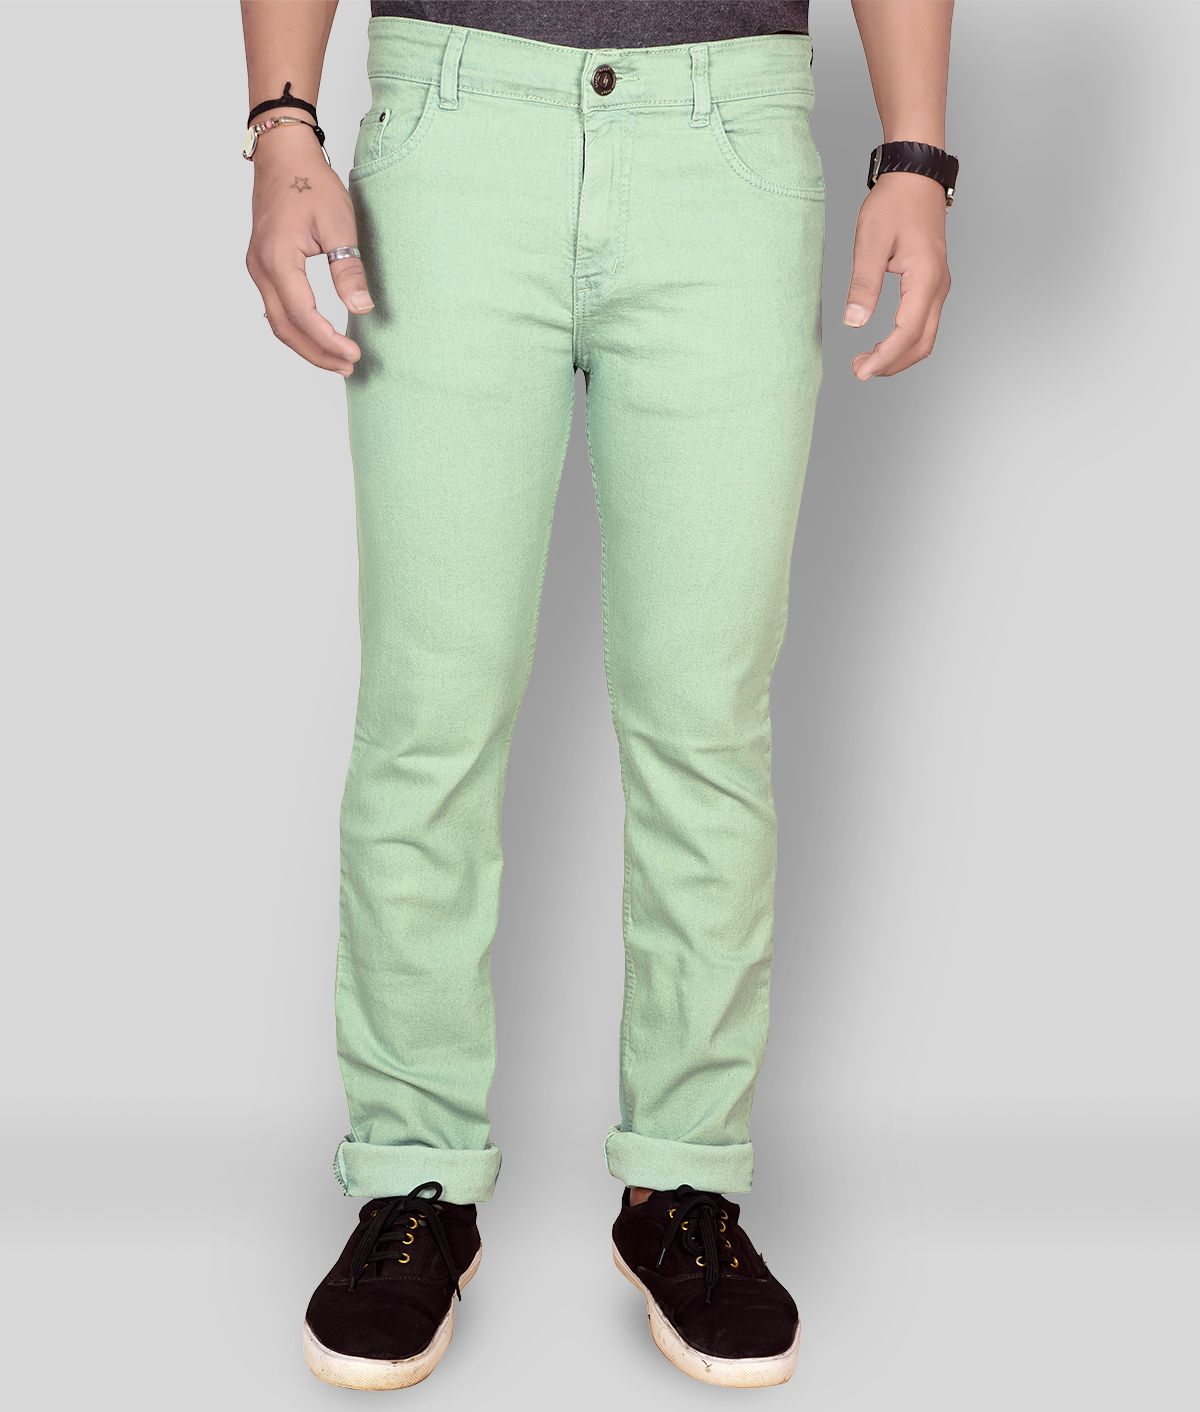 JB JUST BLACK - Light Green Cotton Blend Regular Fit Men's Jeans ( Pack of 1 )